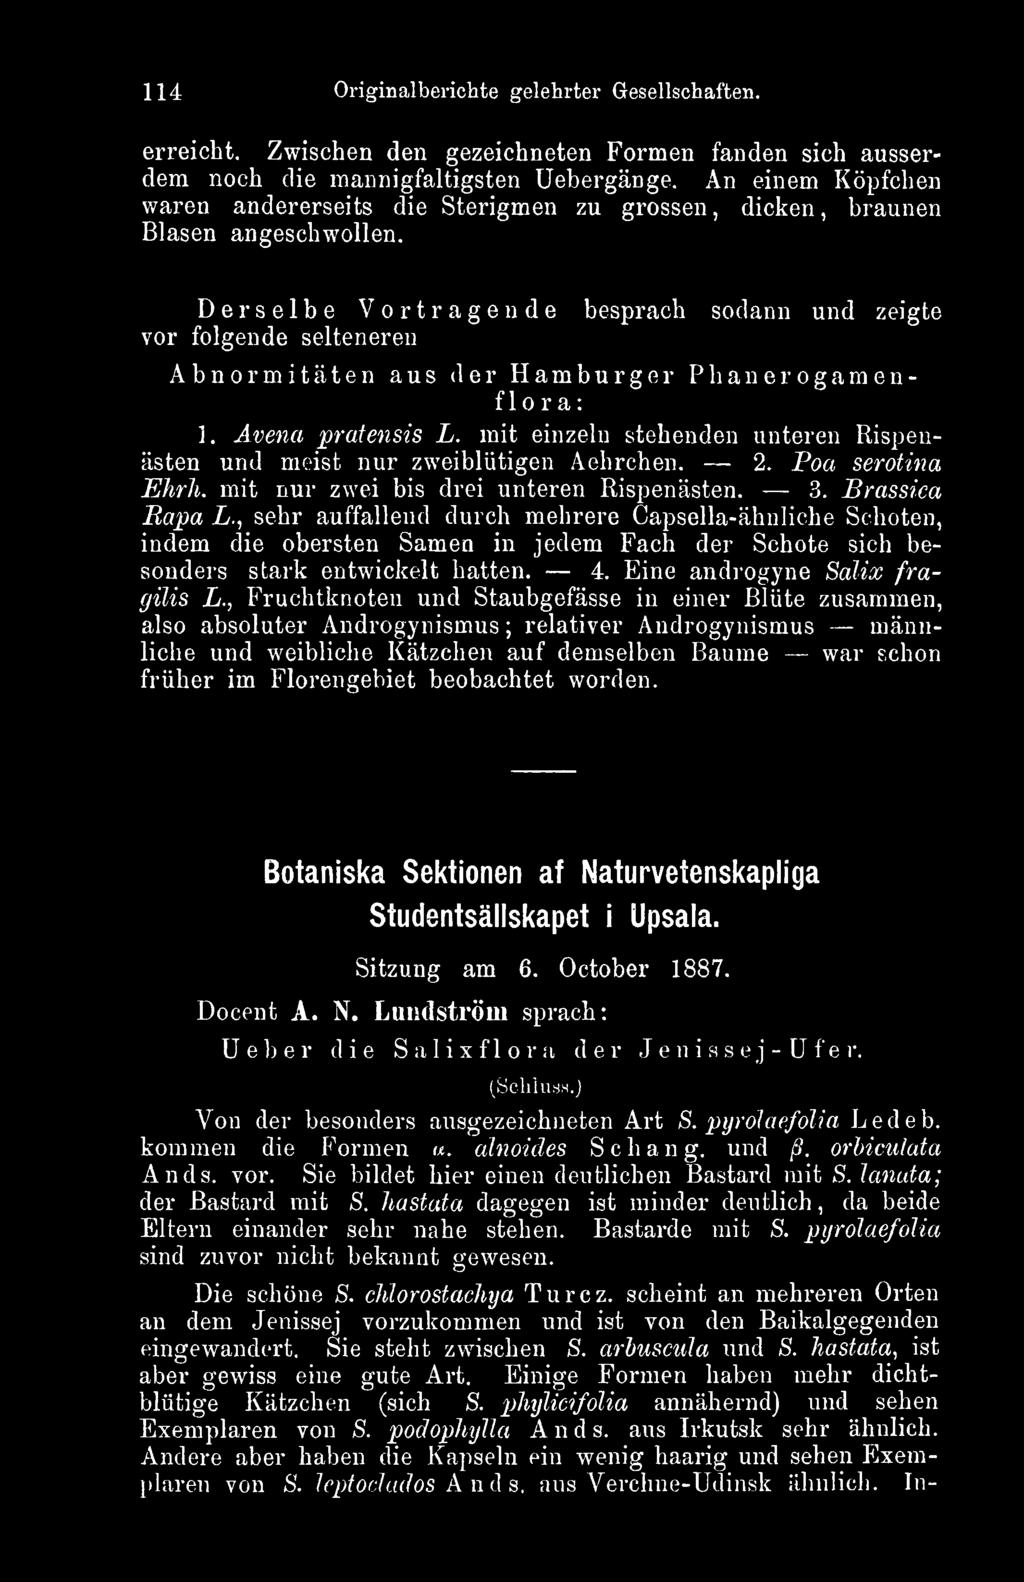 Derselbe Vortragende besprach sodann und zeigte vor folgende selteneren Abnormitäten aus der Hamburger Phanerogamenflora: 1. Avena 'pratensis L.